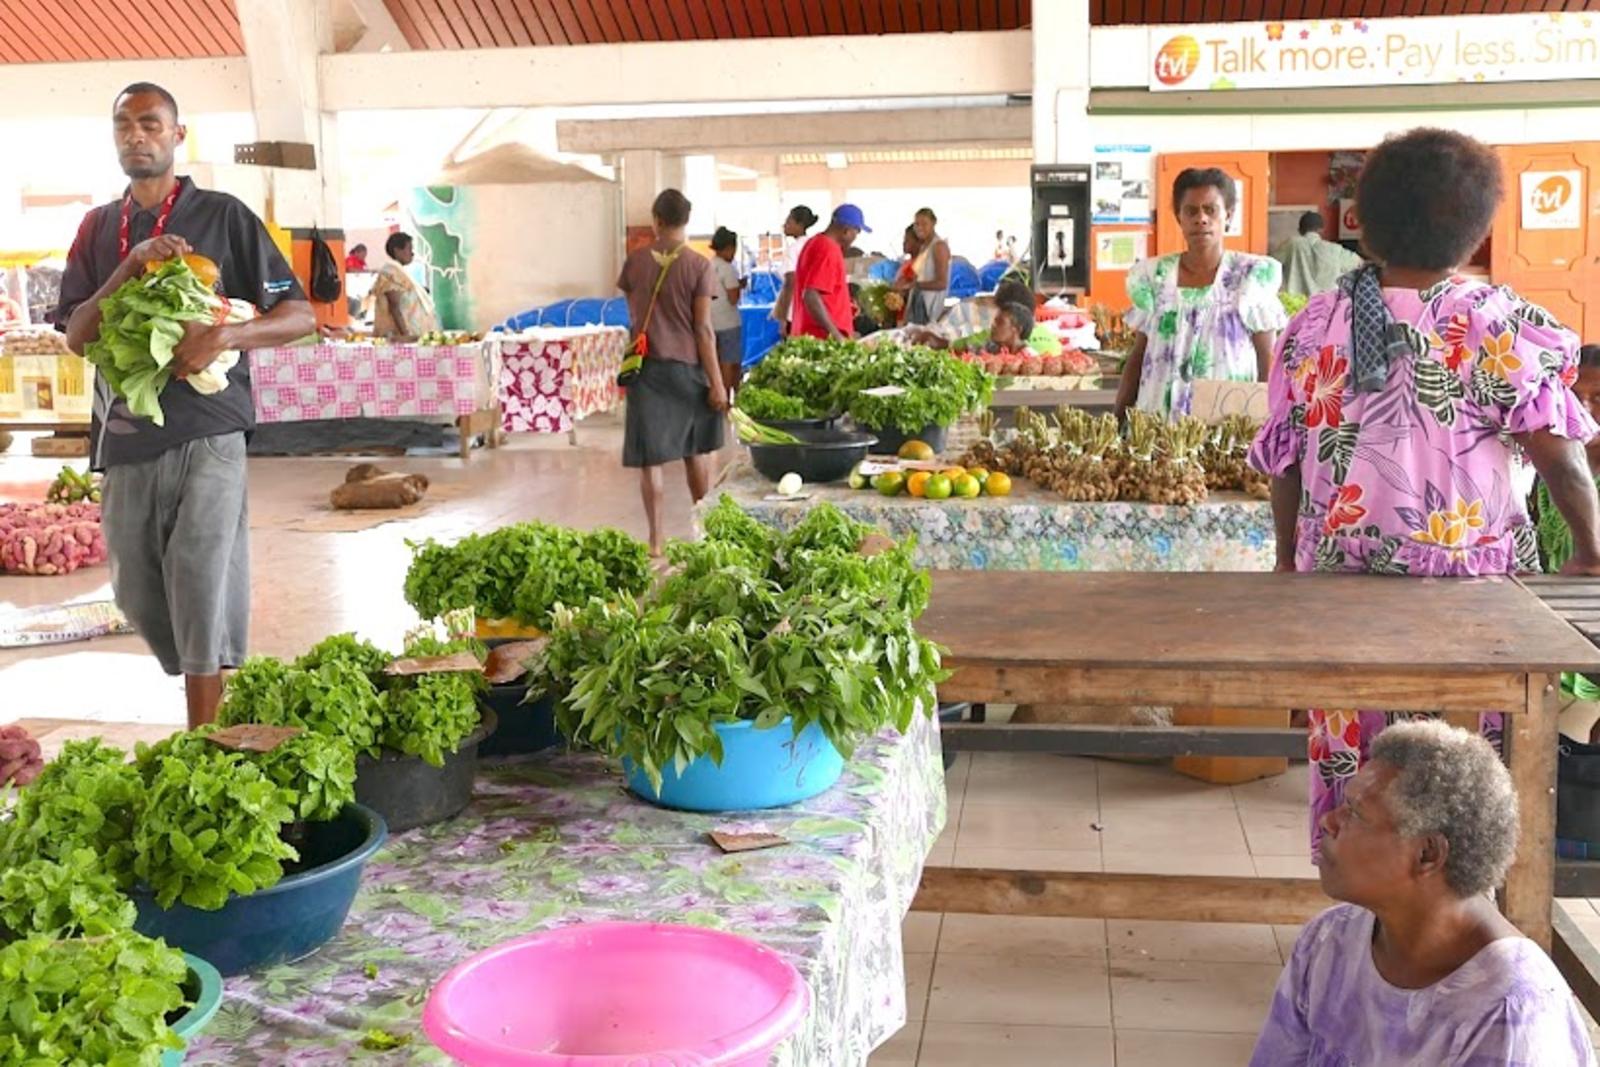 El mercado de Port Vila ha abierto de nuevo más de un mes después de que ciclón Pam golpeara Vanuatu y destruyera la mayoría de los cultivos